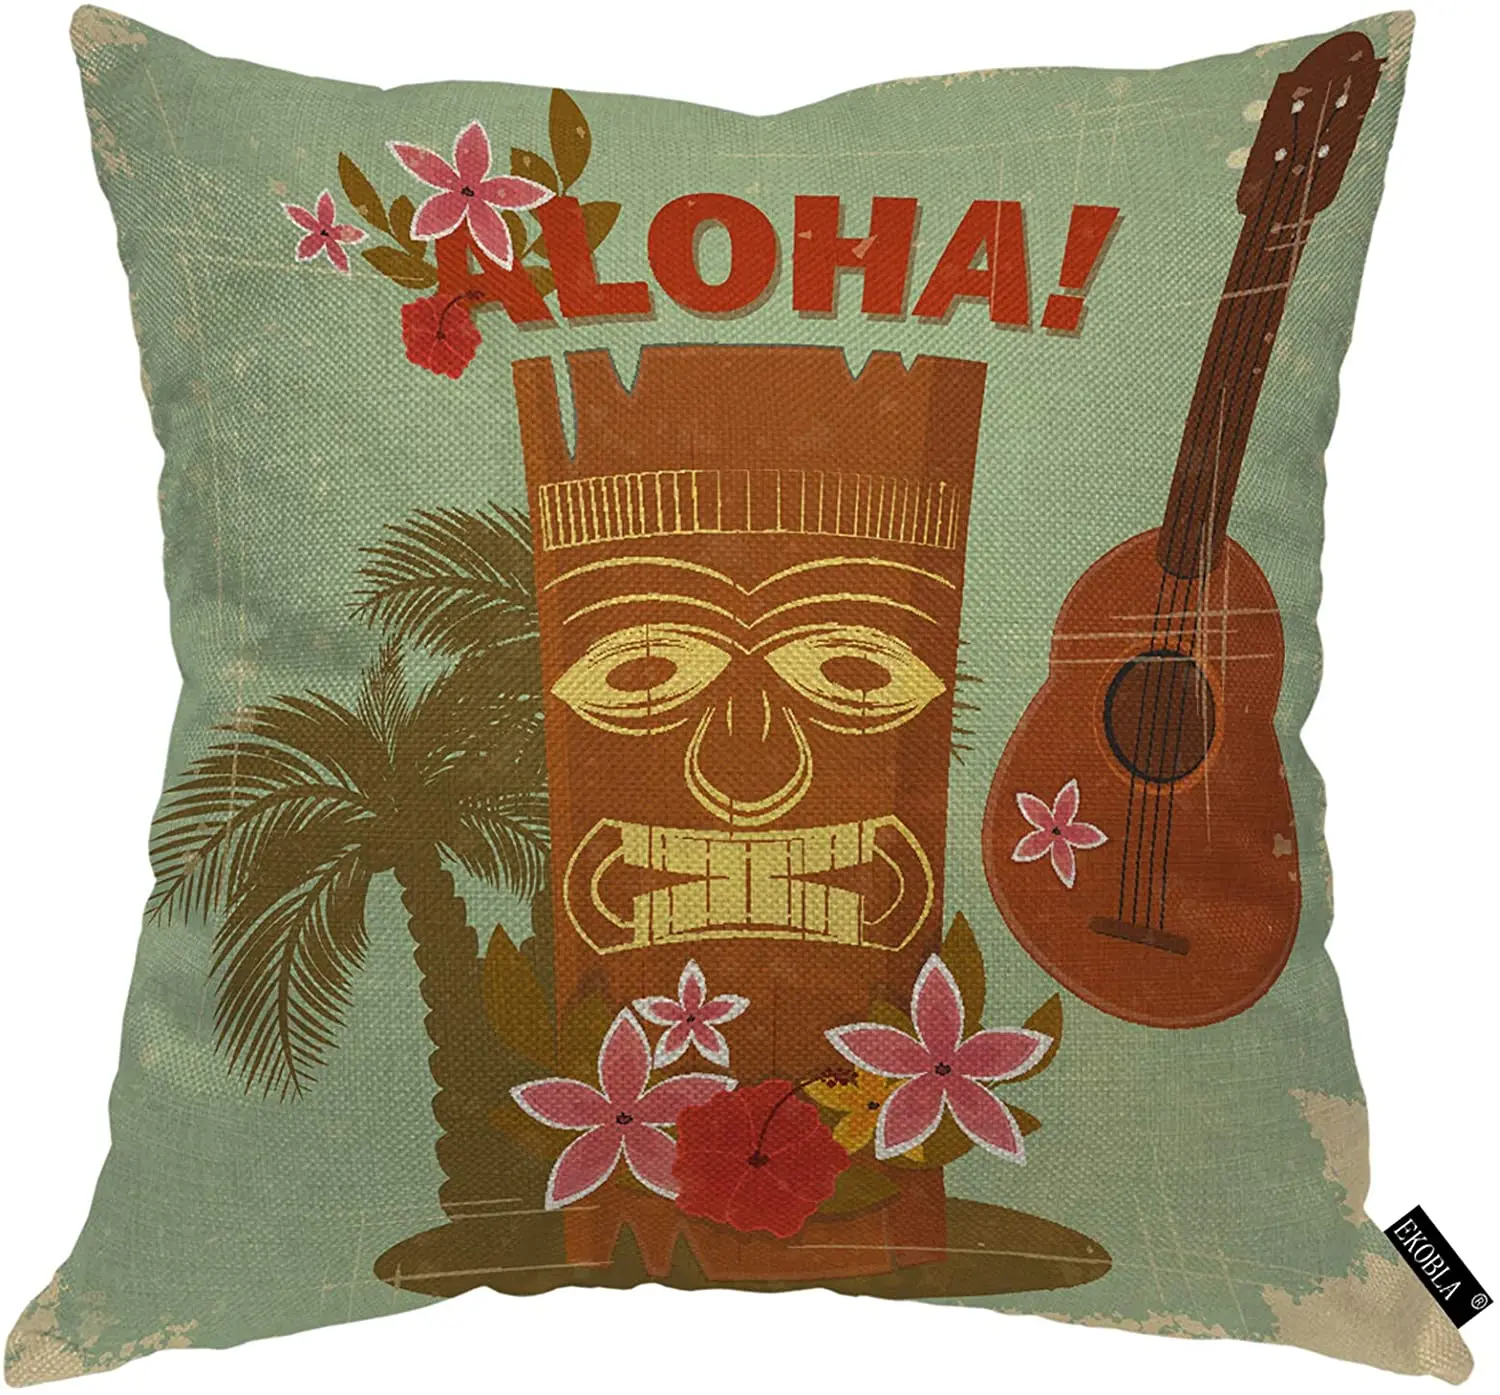 

Наволочка EKOBLA для гавайской подушки, уютный квадратный чехол с рисунком алохи, тропической гитары, цветов, пальмы, музыки, плявечерние, лето